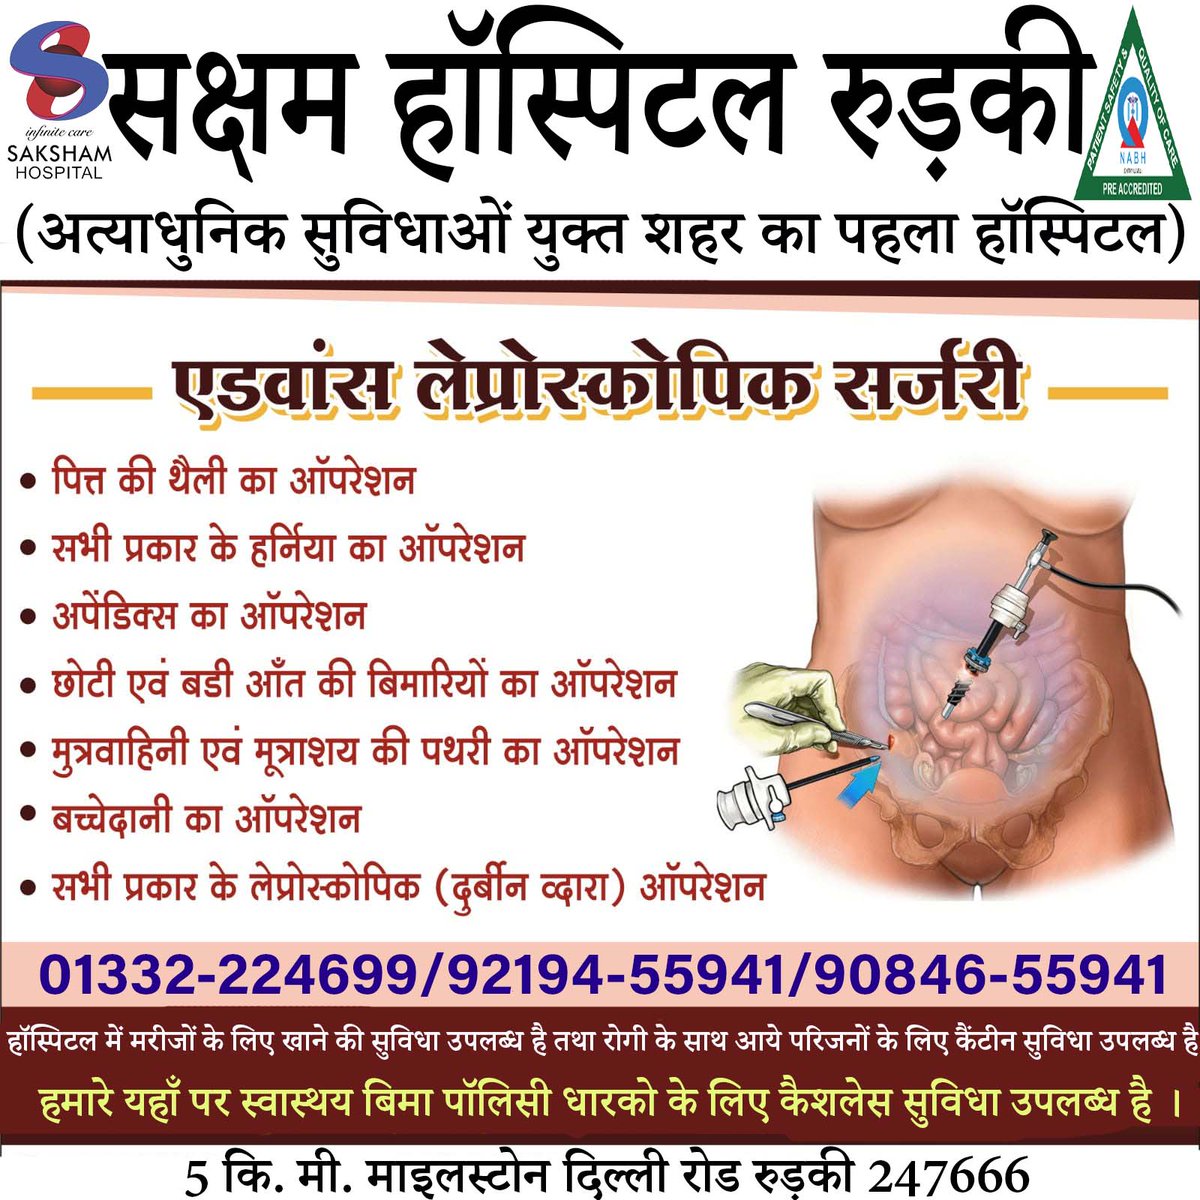 Team : Saksham Hospital Roorkee
Address: 5km Milestone Delhi Road Roorkee 247666
Call: 01332-224699 /92194-55941/ 90846-55941
#laparoscopic #surgery#laparoscopy#laparoscopicsurgery#doctor #surgeon#LaparoscopicSurgeon#endoscopy#laparoscopia